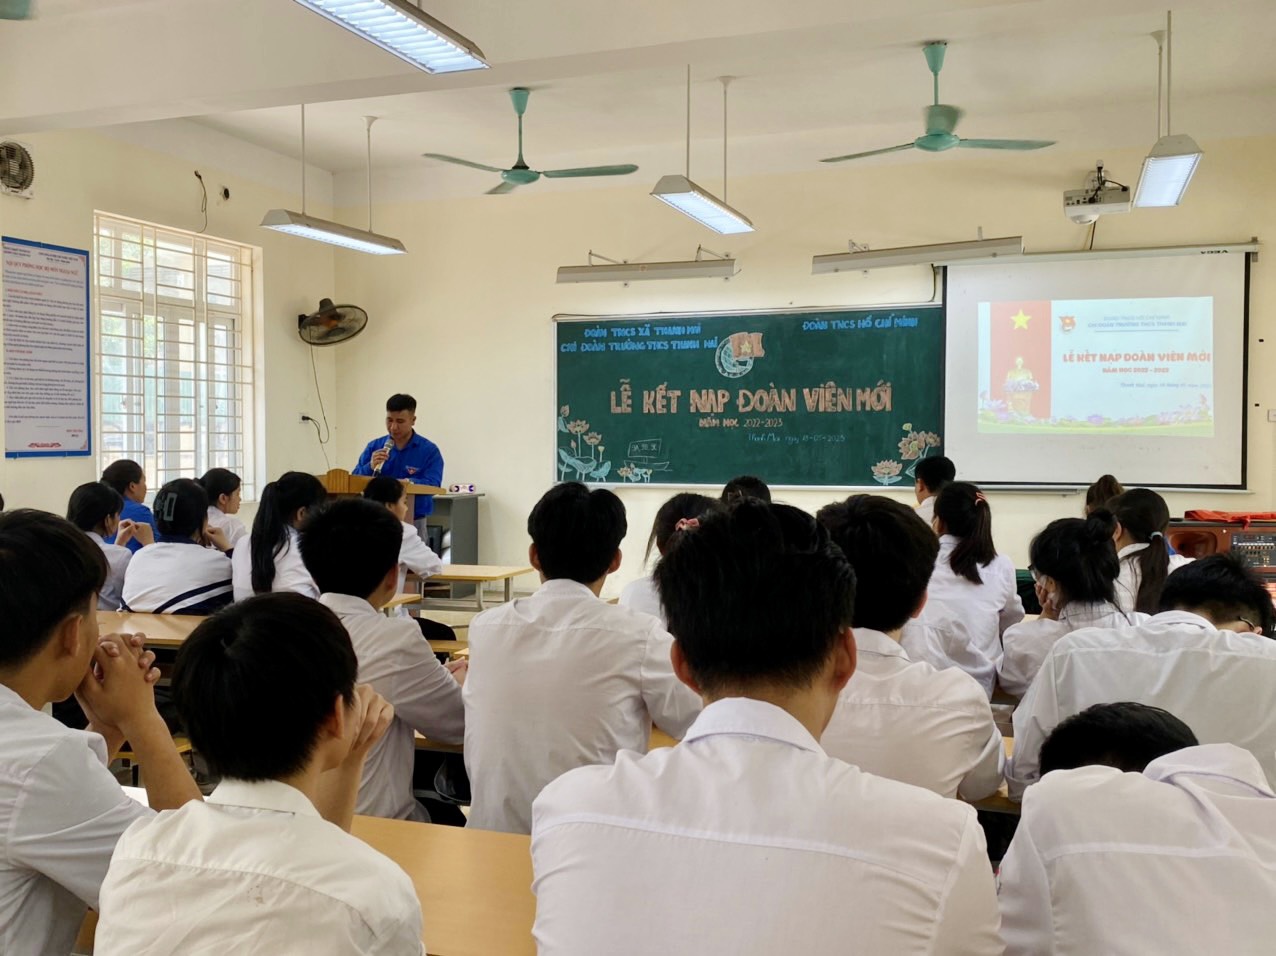 Đồng chí Lê Văn Vinh - Bí thư Đoàn xã Thanh Mai đã thông qua Quyết định chuẩn y kết nạp đoàn viên mới.